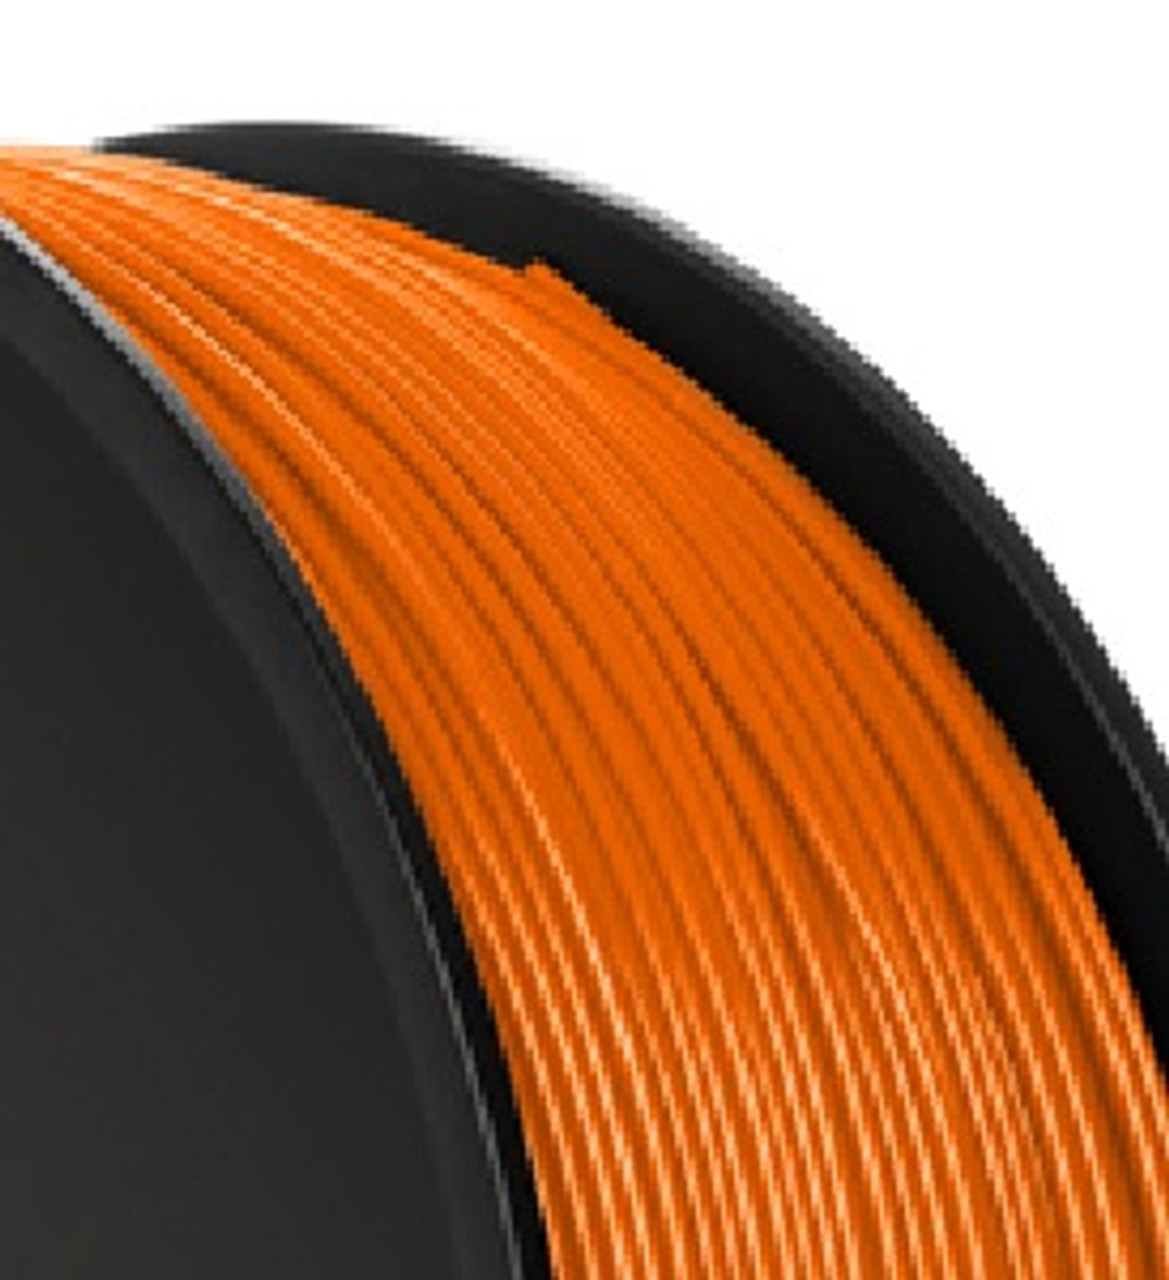 Verbatim 55255 Polylactic acid (PLA) Orange 1000g 3D printing material